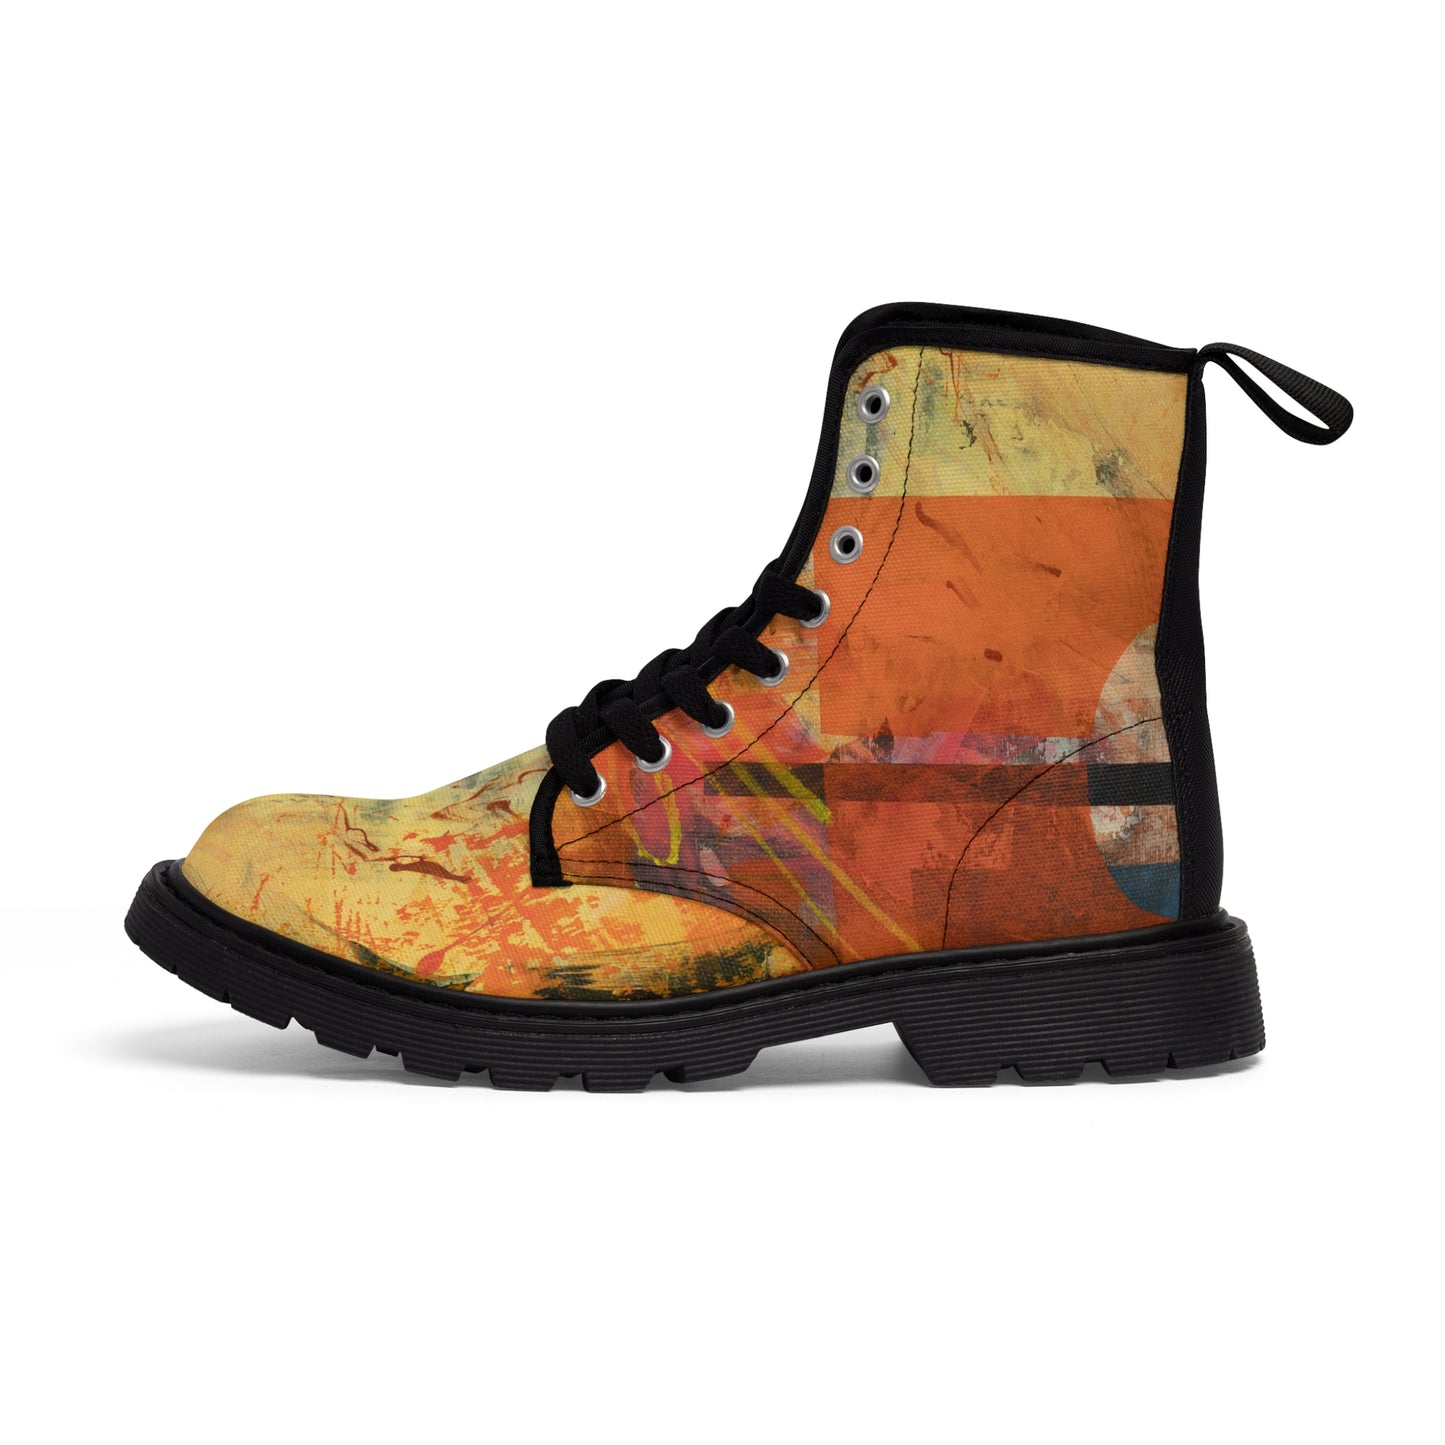 Women's Canvas Boots - 02868 US 11 Black sole